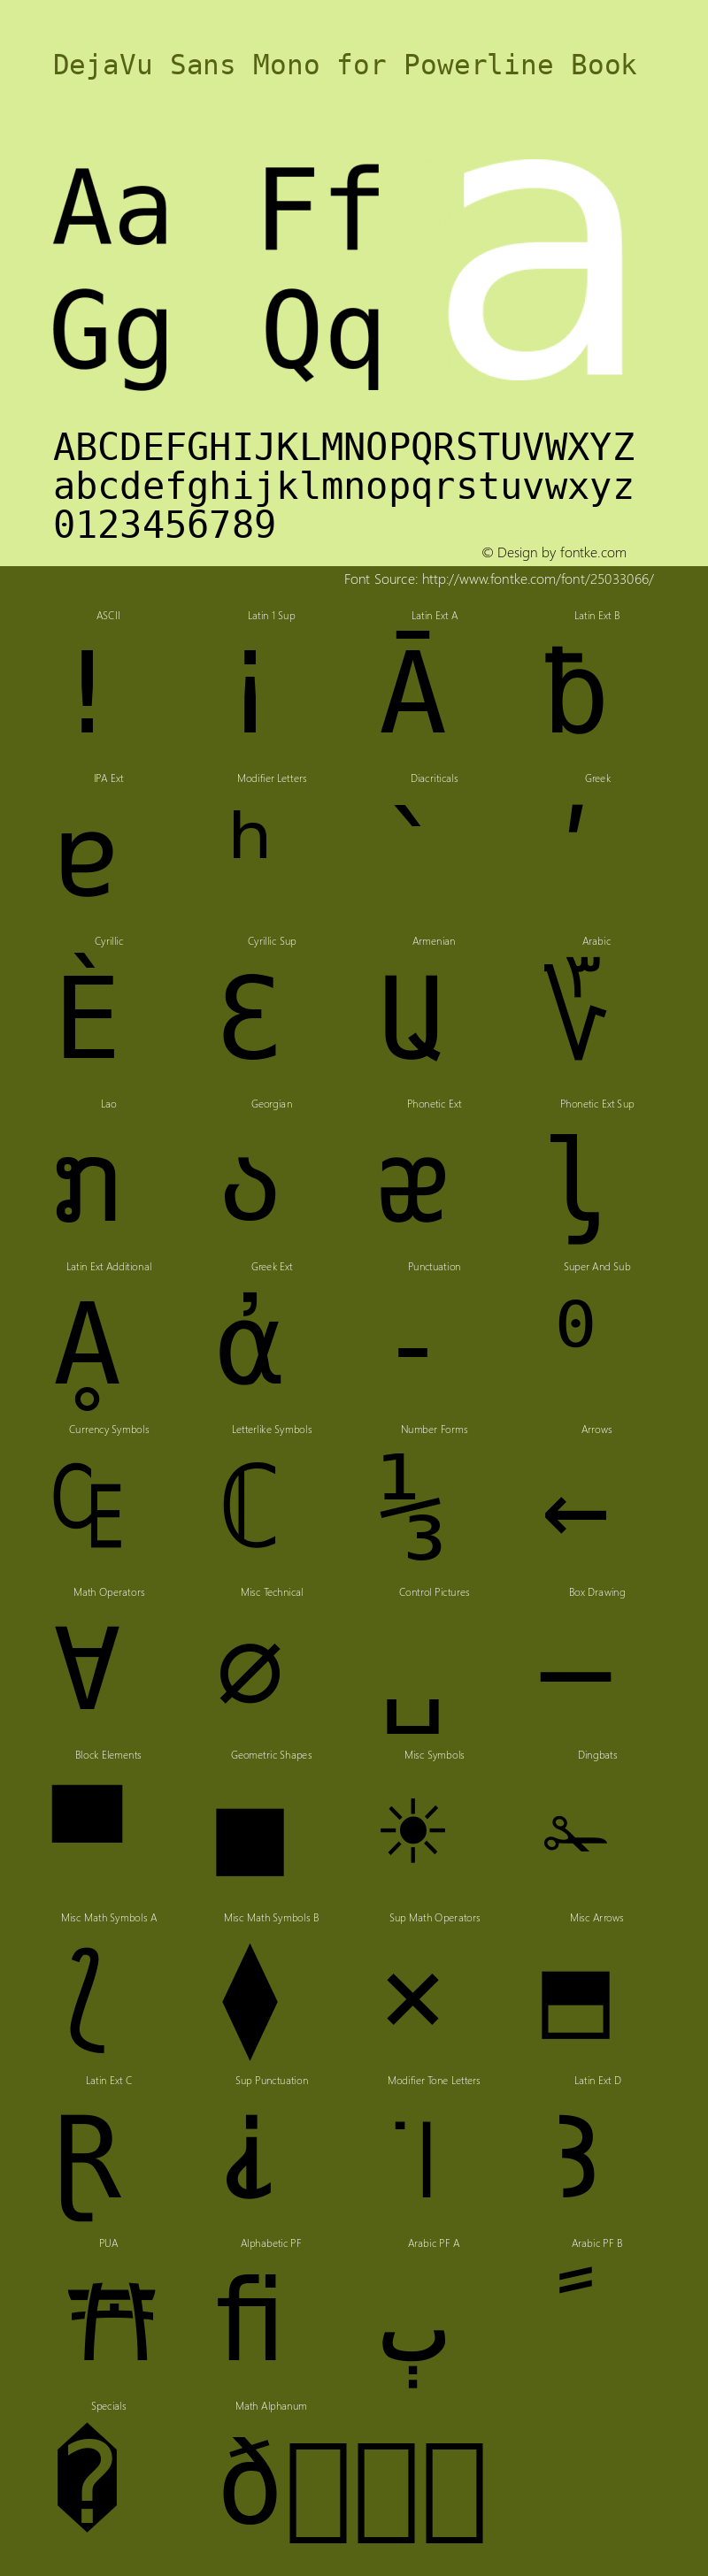 DejaVu Sans Mono for Powerline Nerd Font Plus Font Awesome Plus Octicons Plus Pomicons Windows Compatible Version 2.33图片样张